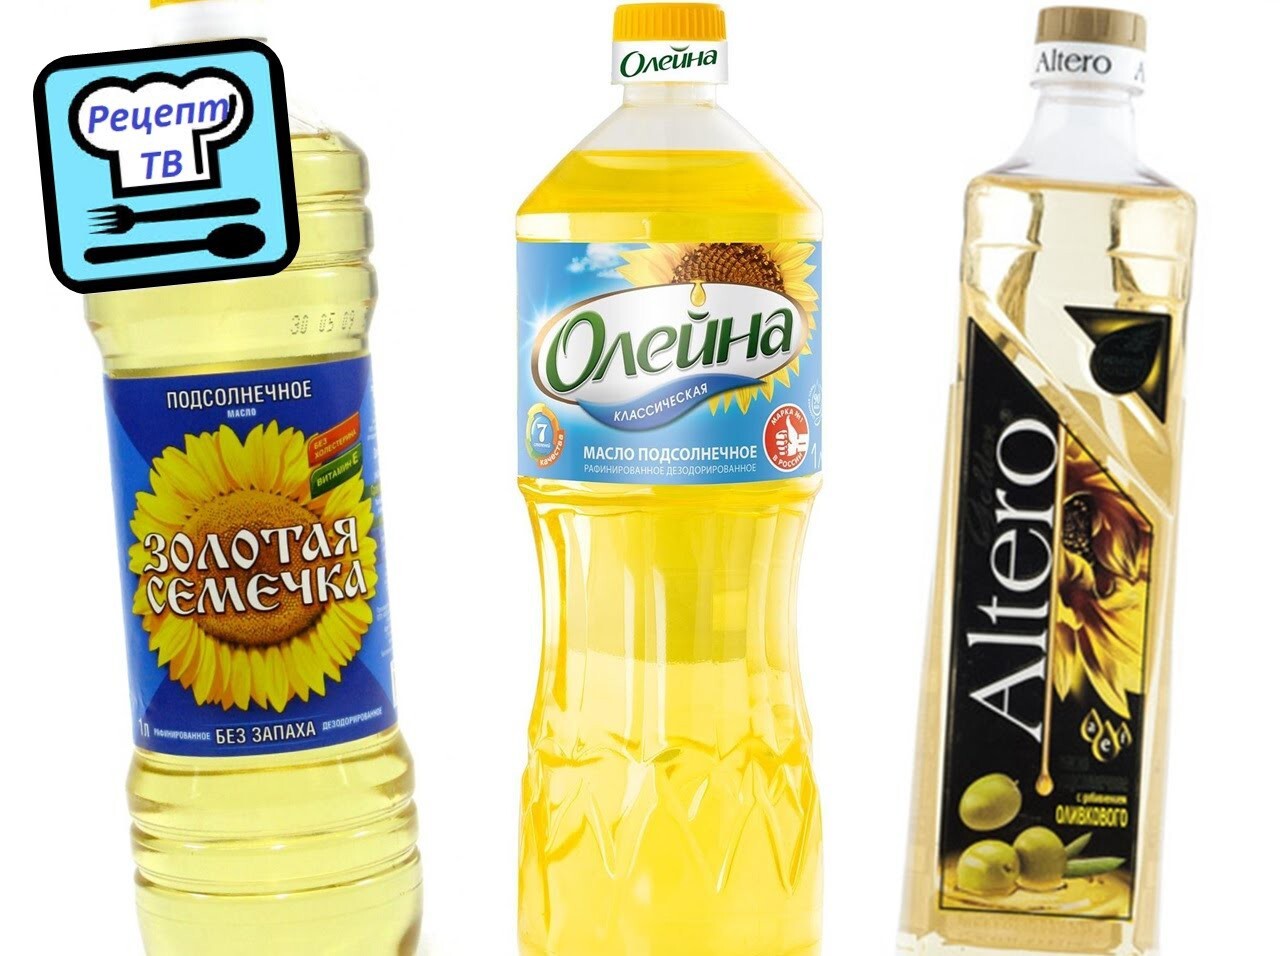 Как выбрать подсолнечное масло? Олейна, Золотая семечка, Altero и др.